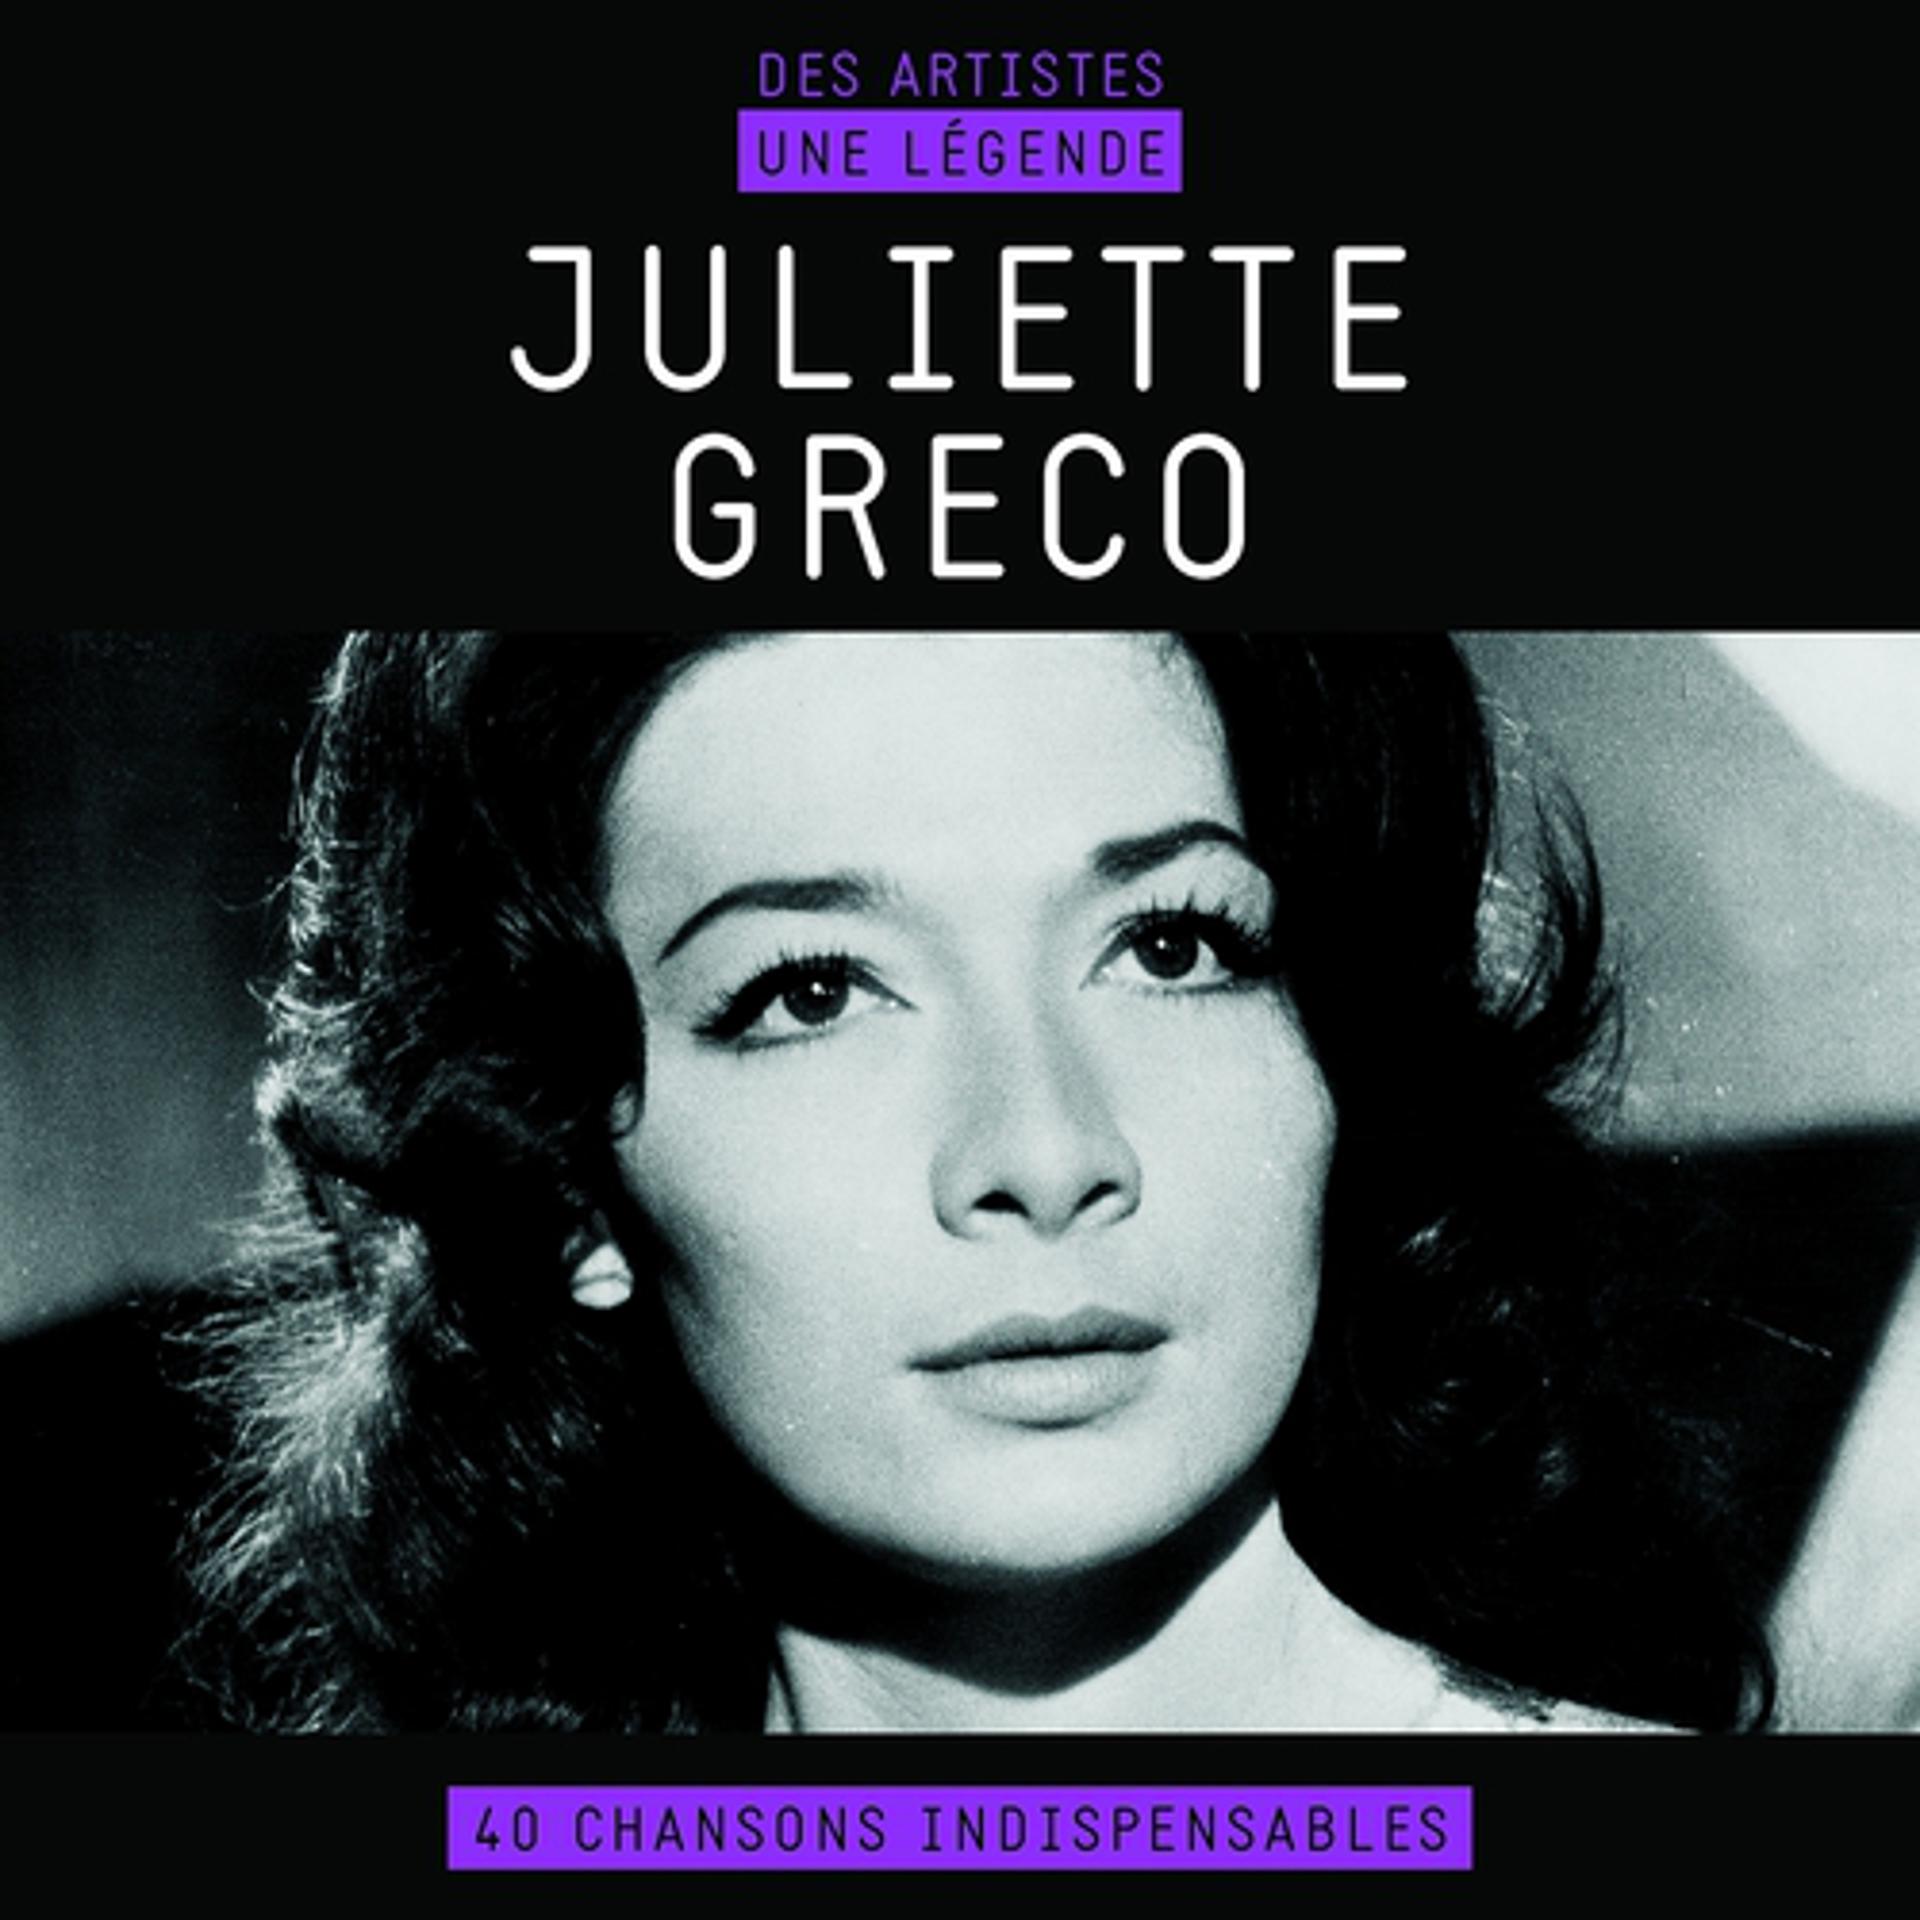 Постер альбома Juliette gréco (Des artistes, une légende)